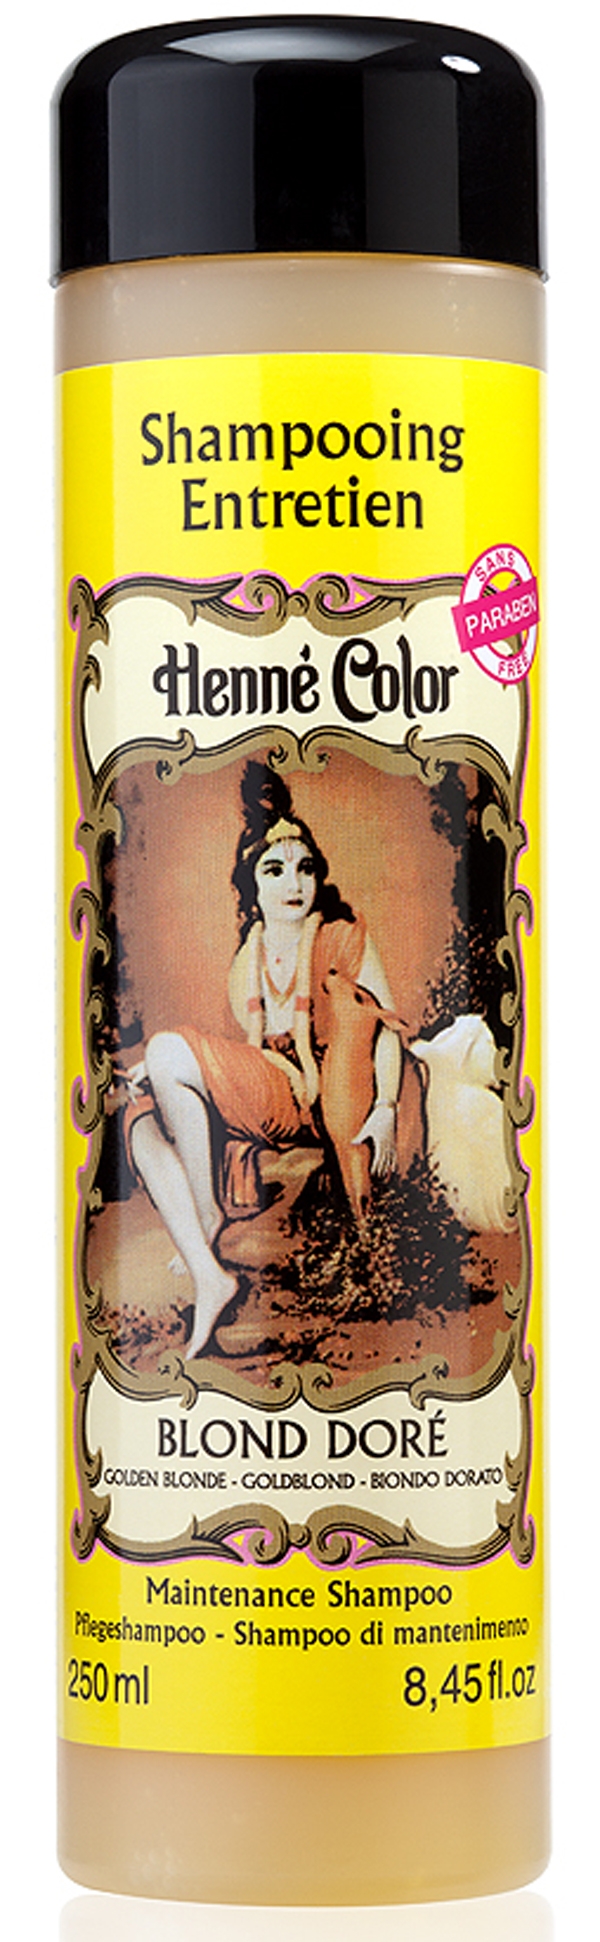 Packung mit 3 Henna-Color-Goldblond-Pflegeshampoos 250 ml